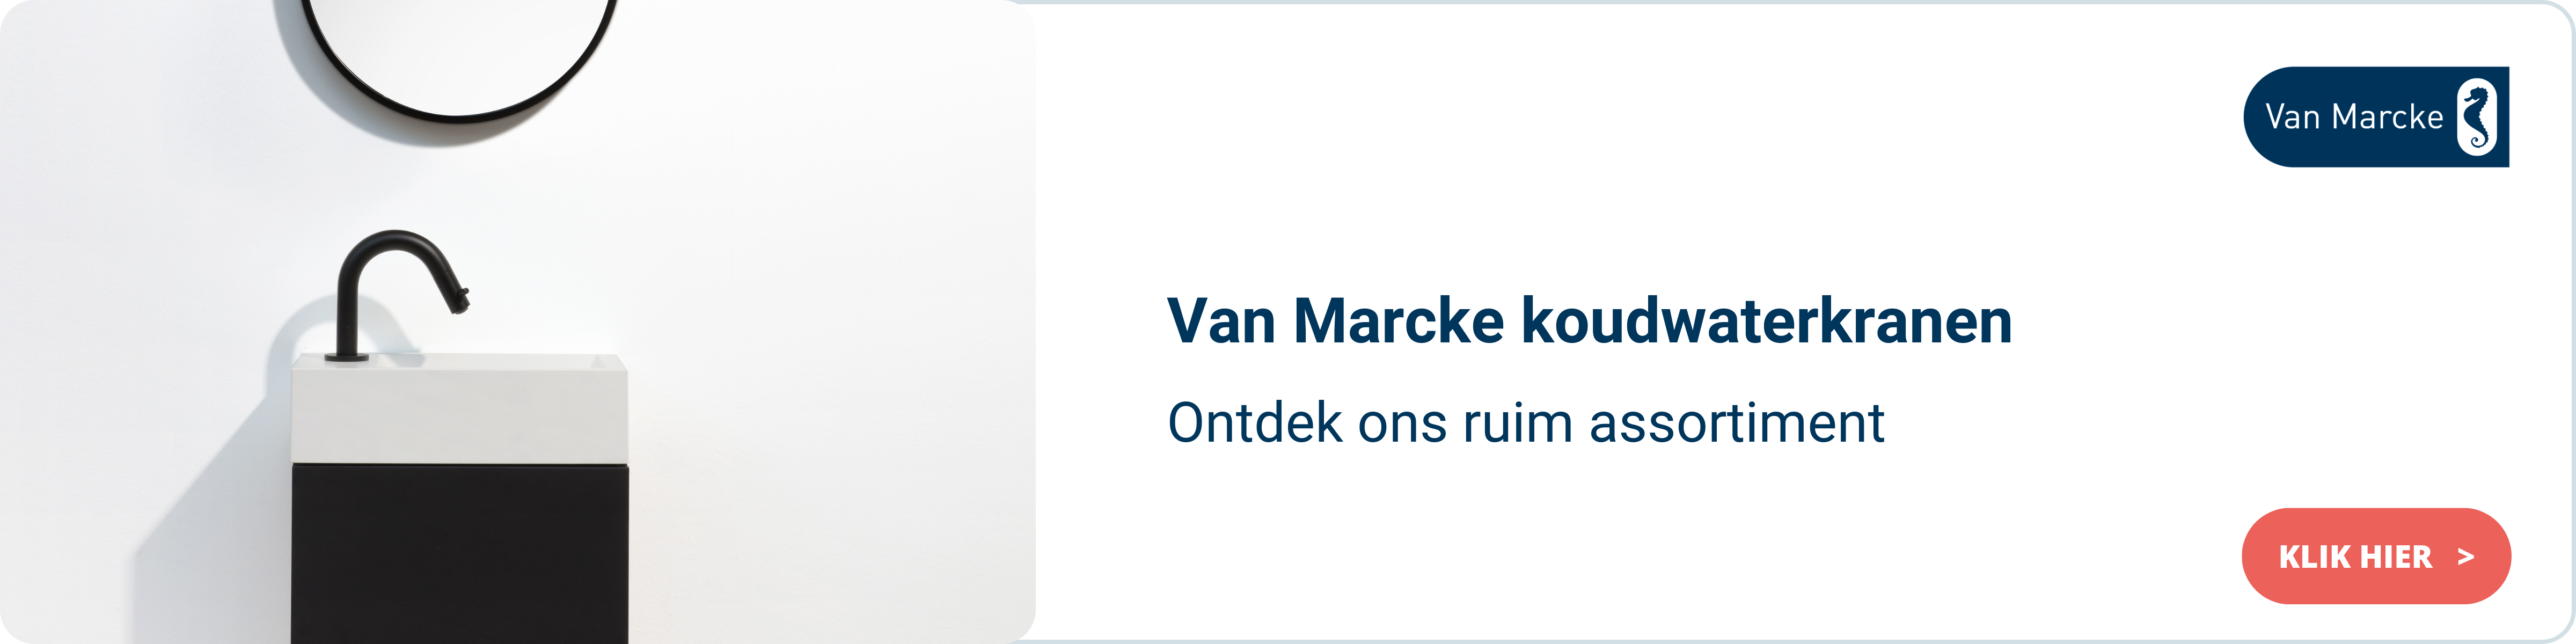 Van Marcke koudwaterkranen NL.png